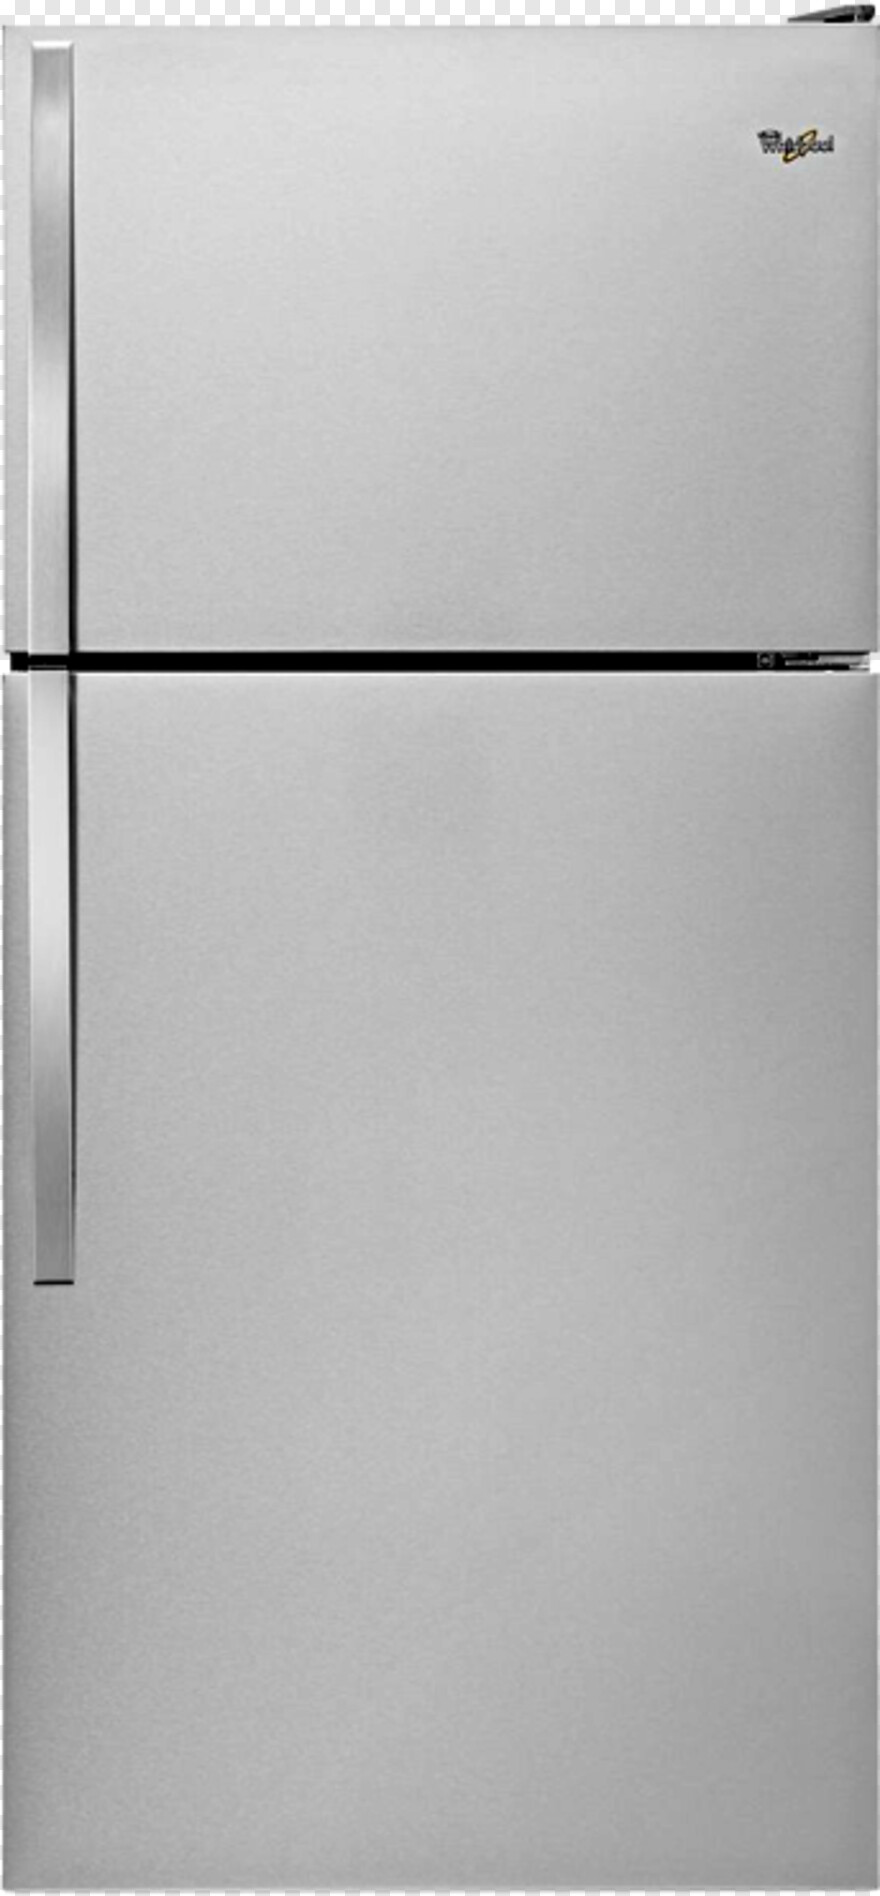 refrigerator # 636759